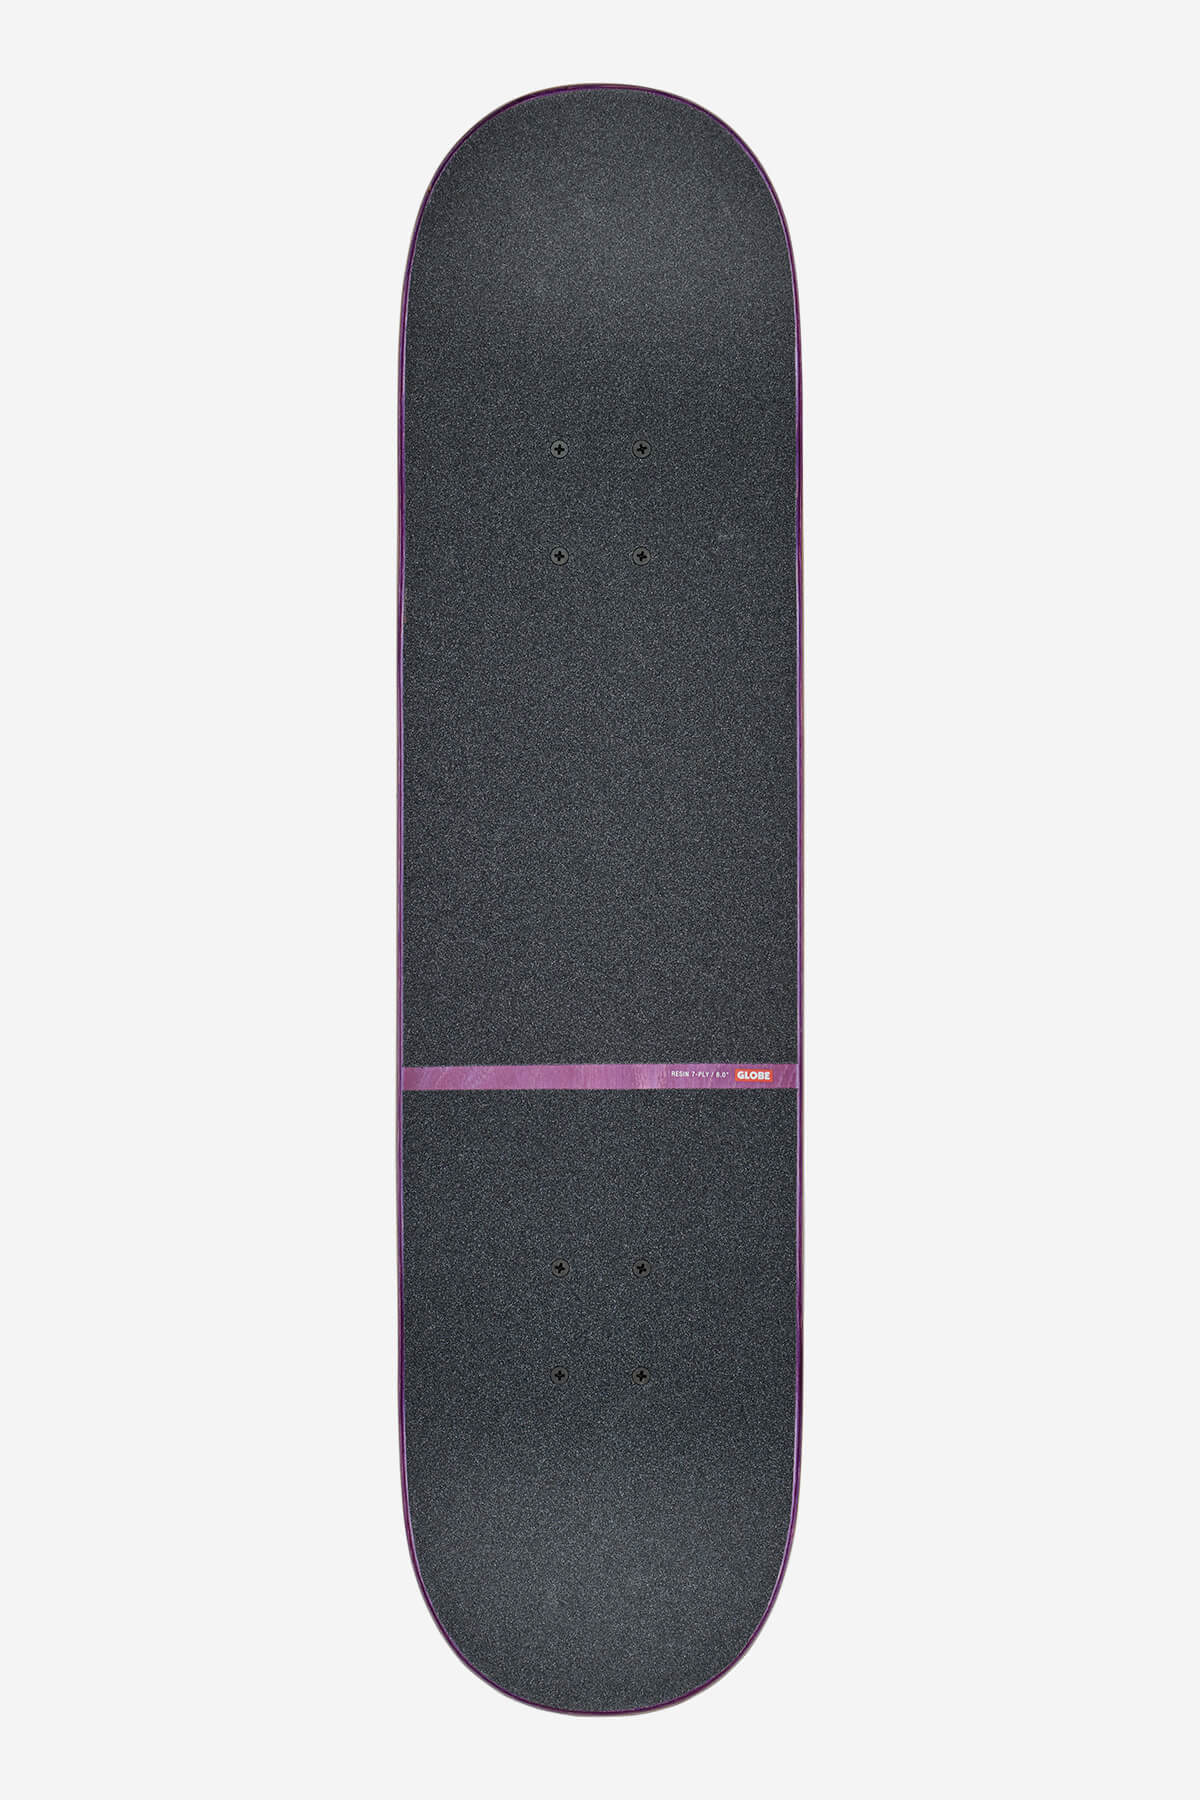 Globe - G1 Orbit - Super Natural - 8.0" Komplett Skateboard